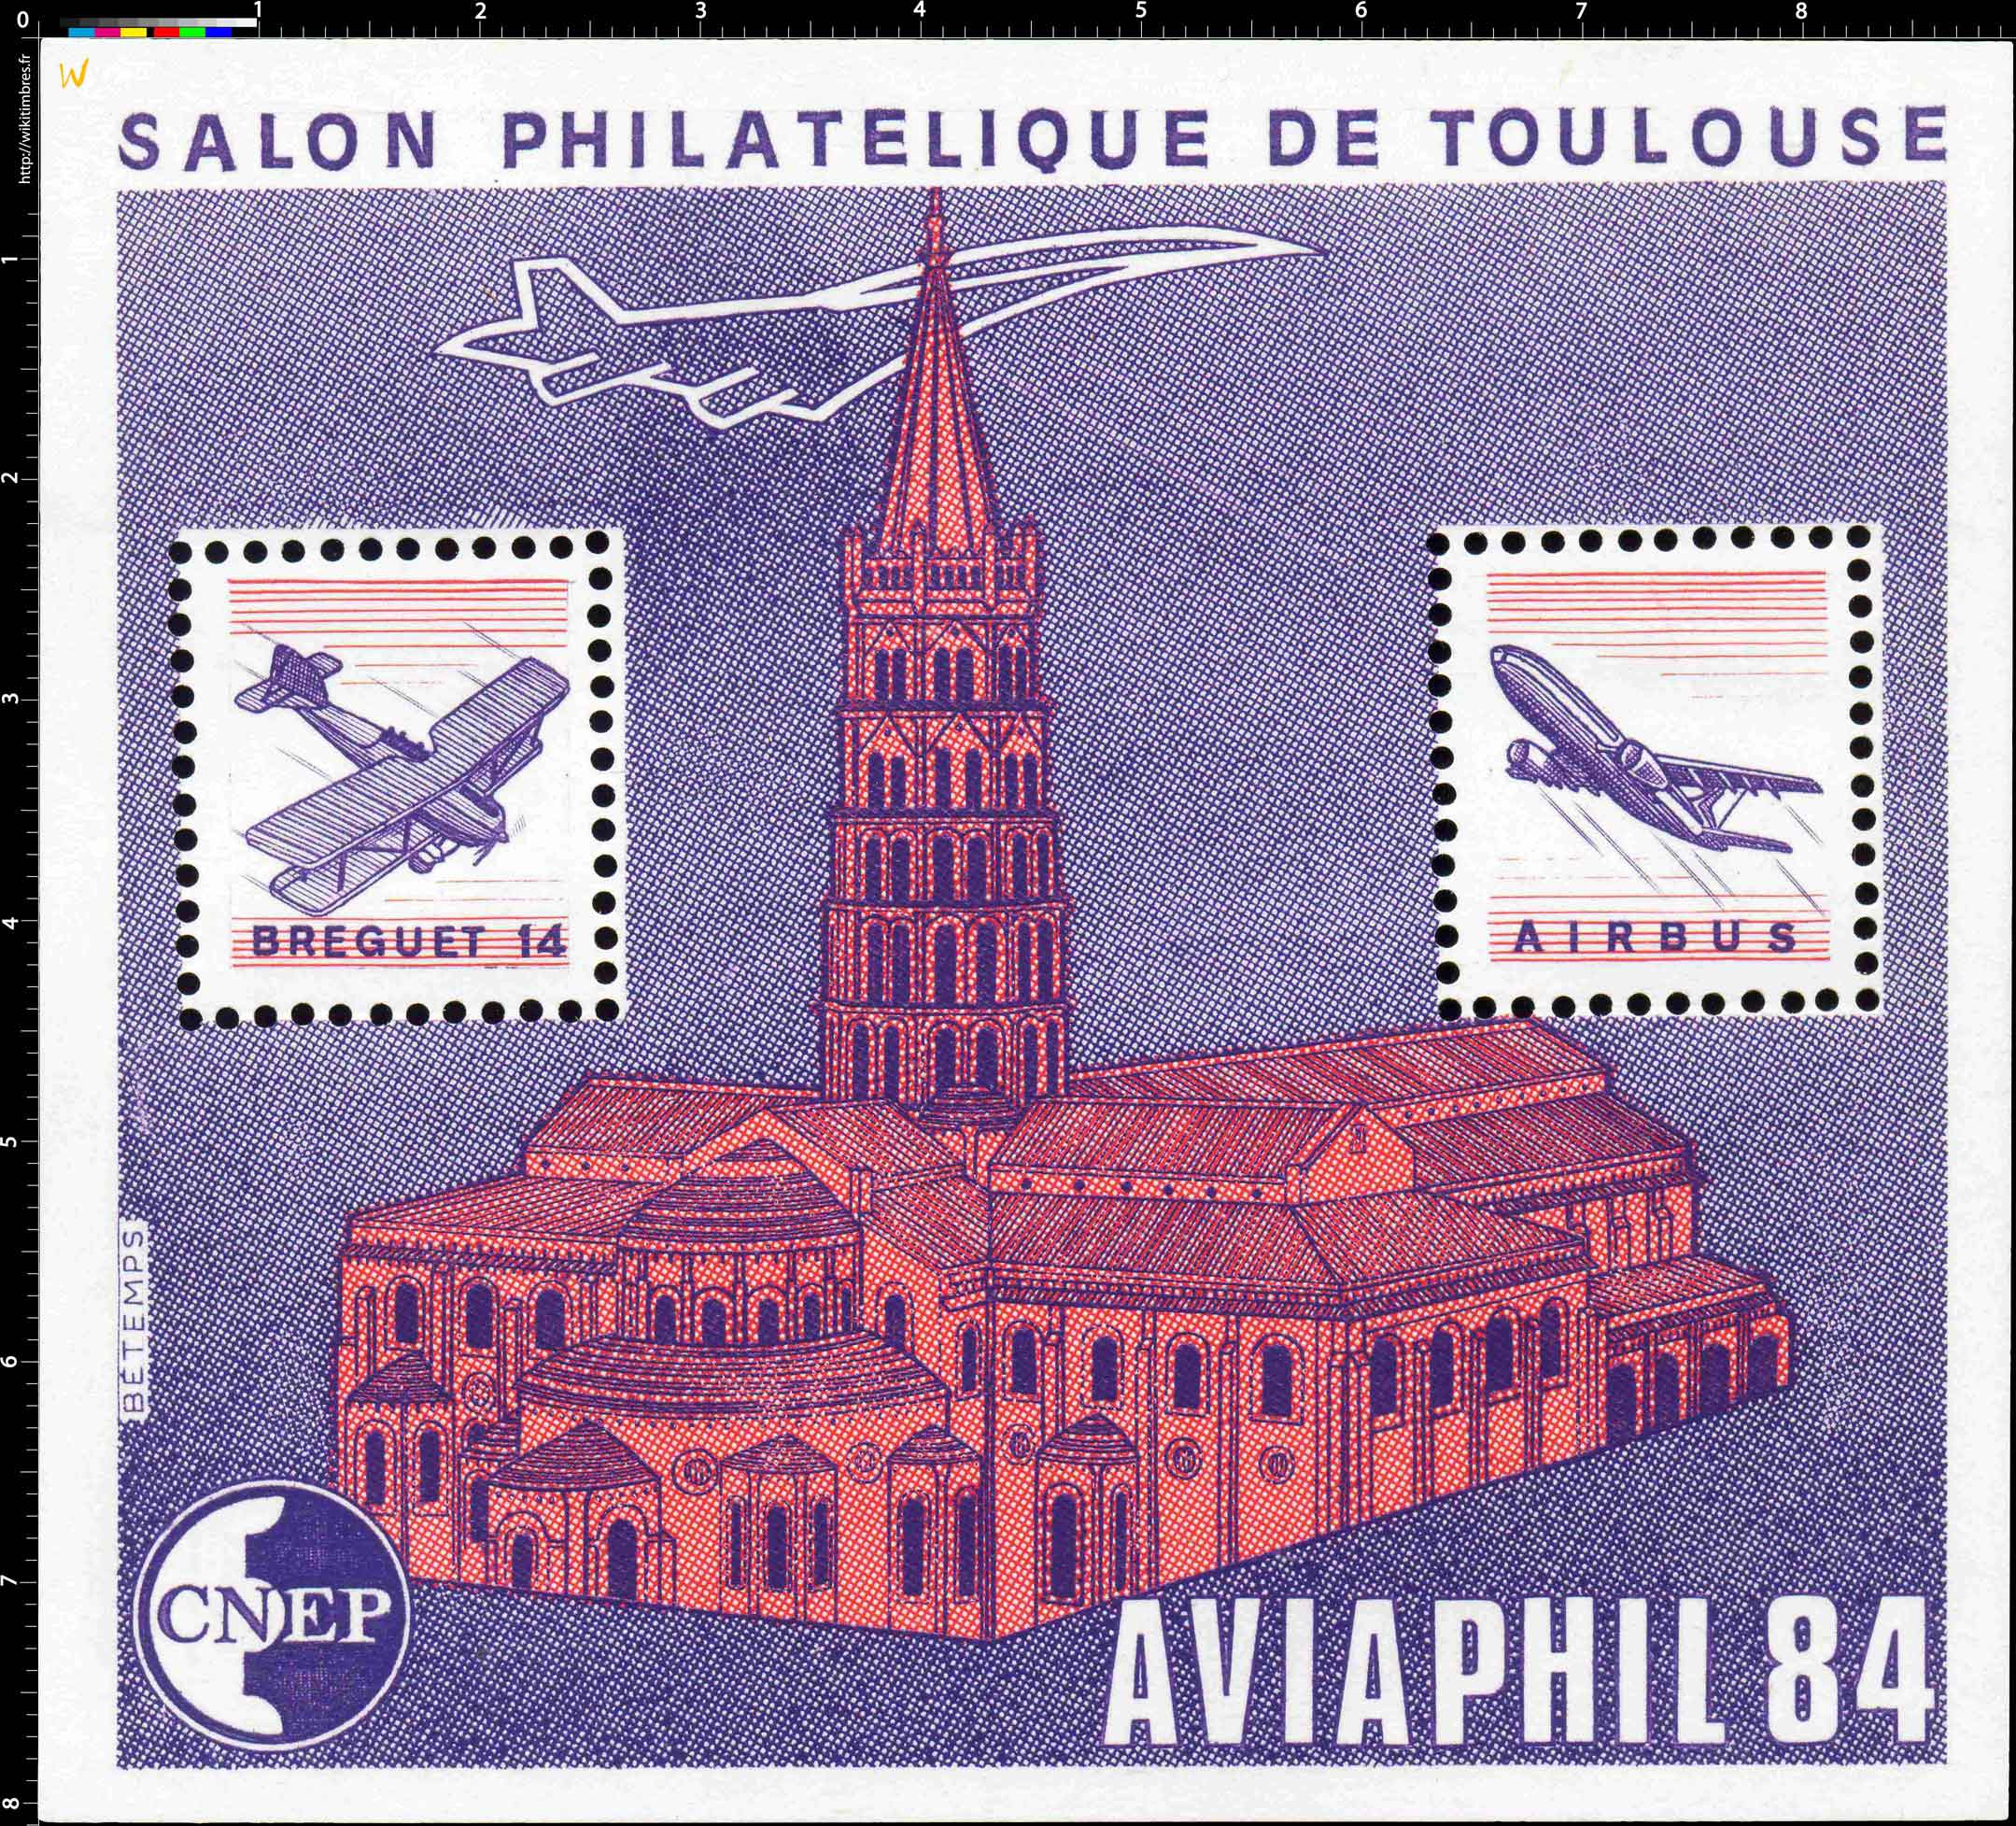 84 AVIAPHIL Salon philatélique de Toulouse CNEP